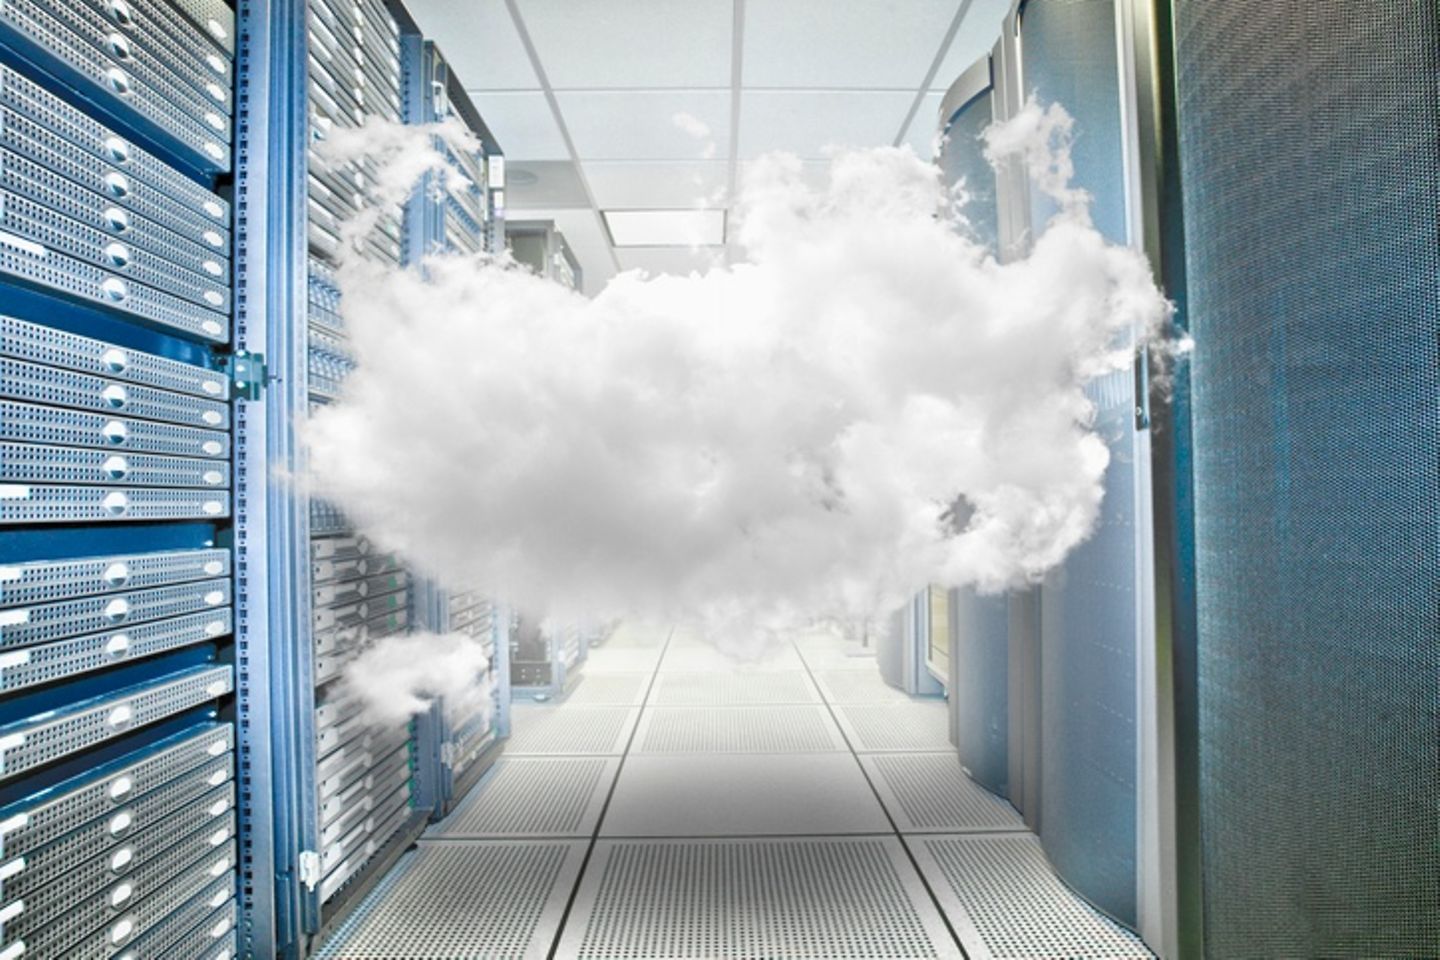 Des nuages en suspension entre les racks d’une salle de serveurs.